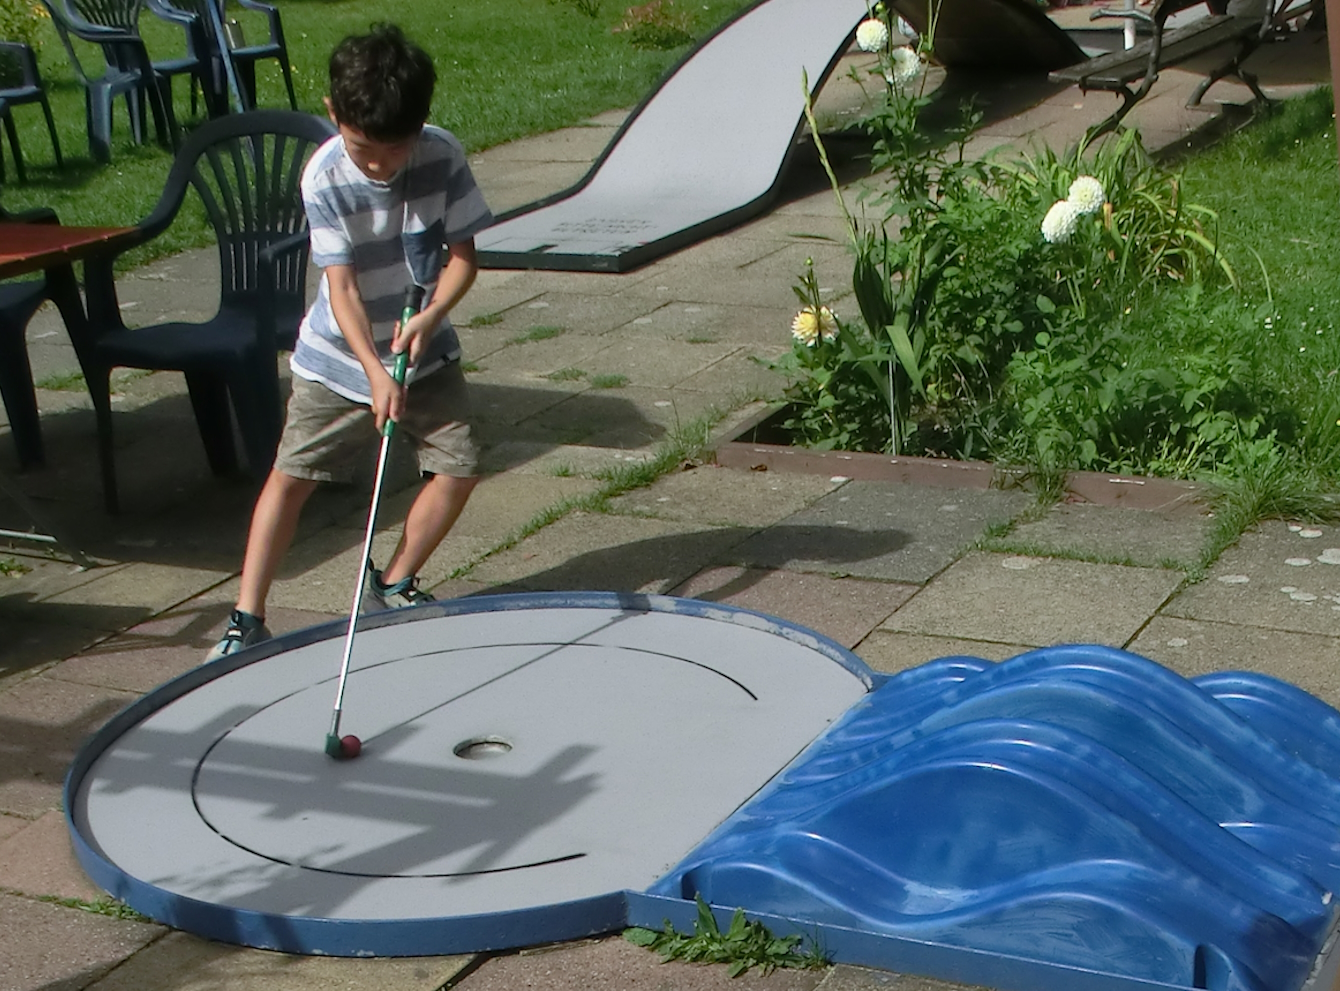 Junge spielt an einer Minigolfbahn mit blauem Hindernis